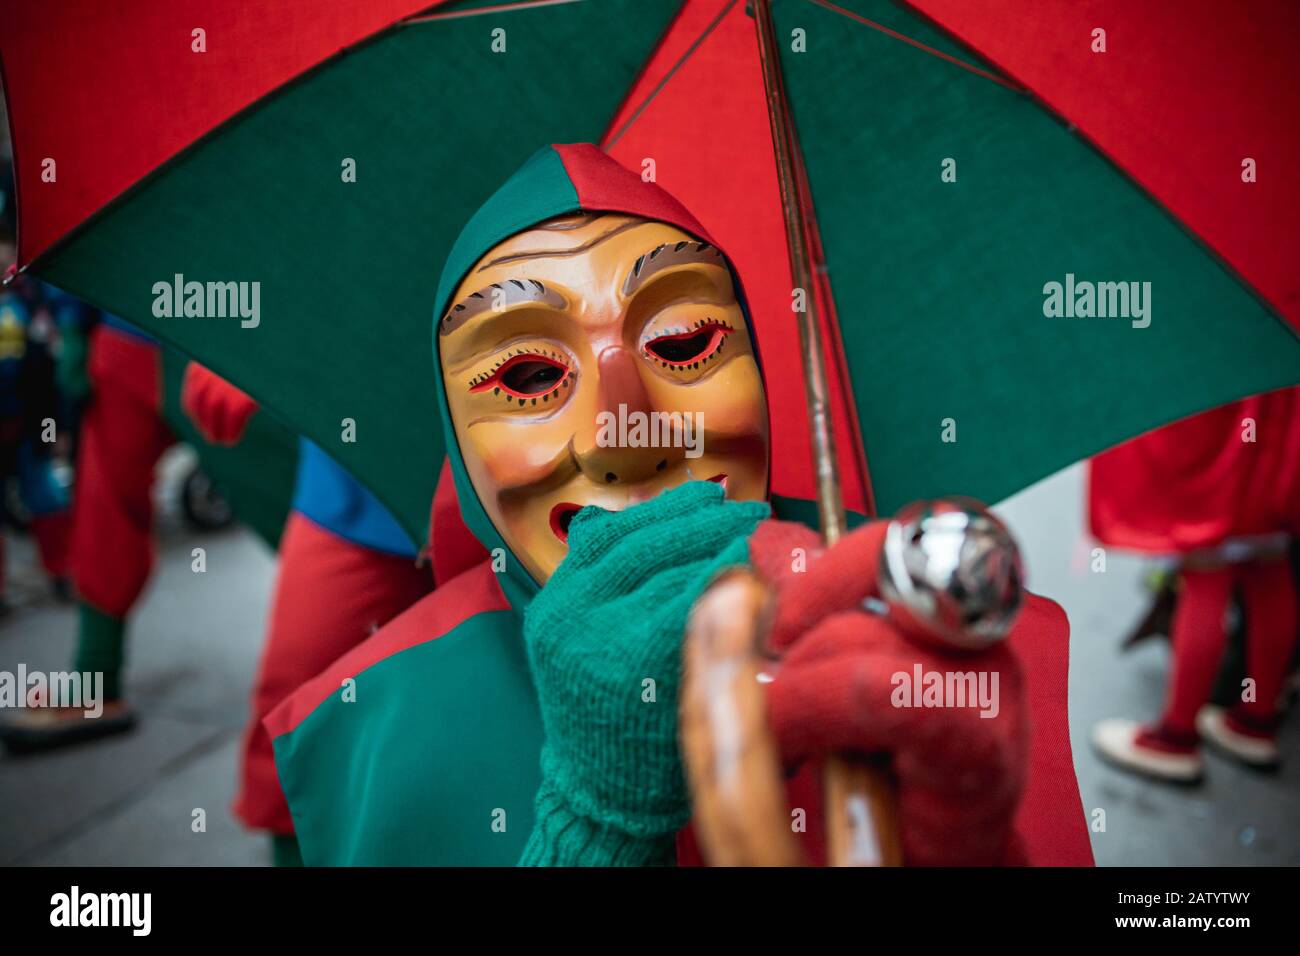 Oberwindemer Spitzbue - sciocco di Carnevale in accappatoio rosso-verde e ombrello durante la sfilata di Carnevale a Staufen, Germania meridionale. Foto Stock